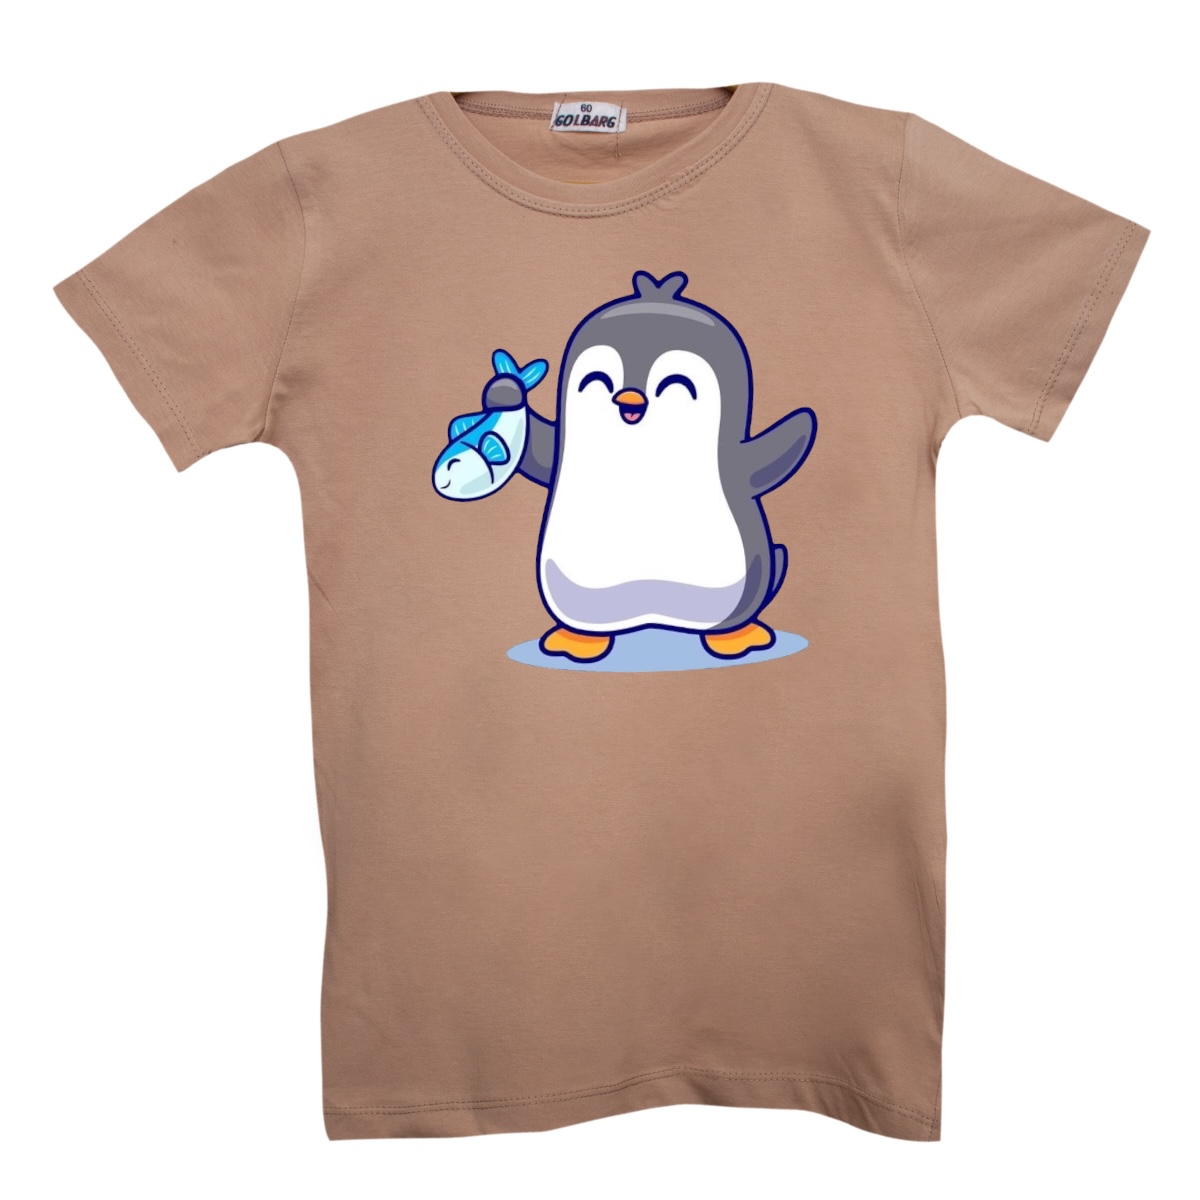 تی شرت بچگانه مدل پنگوئن کد 4